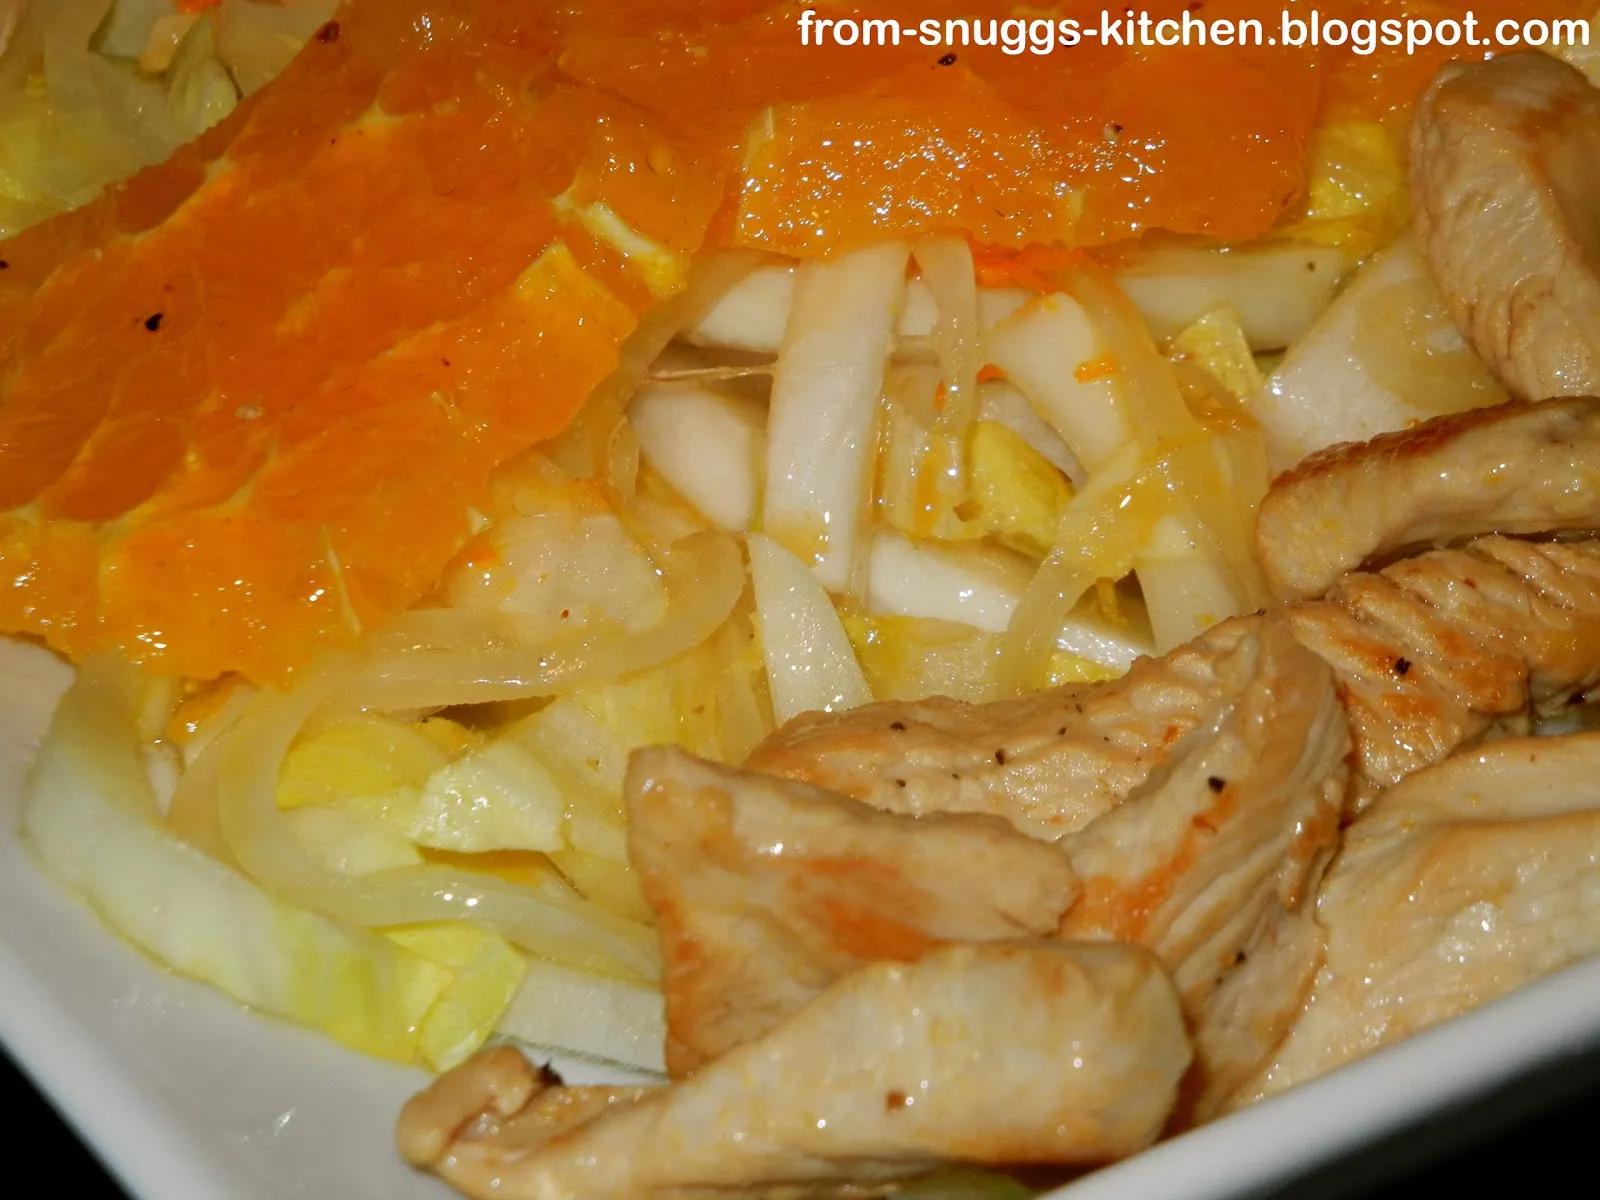 Chicoree-Orangen-Salat - From-Snuggs-Kitchen